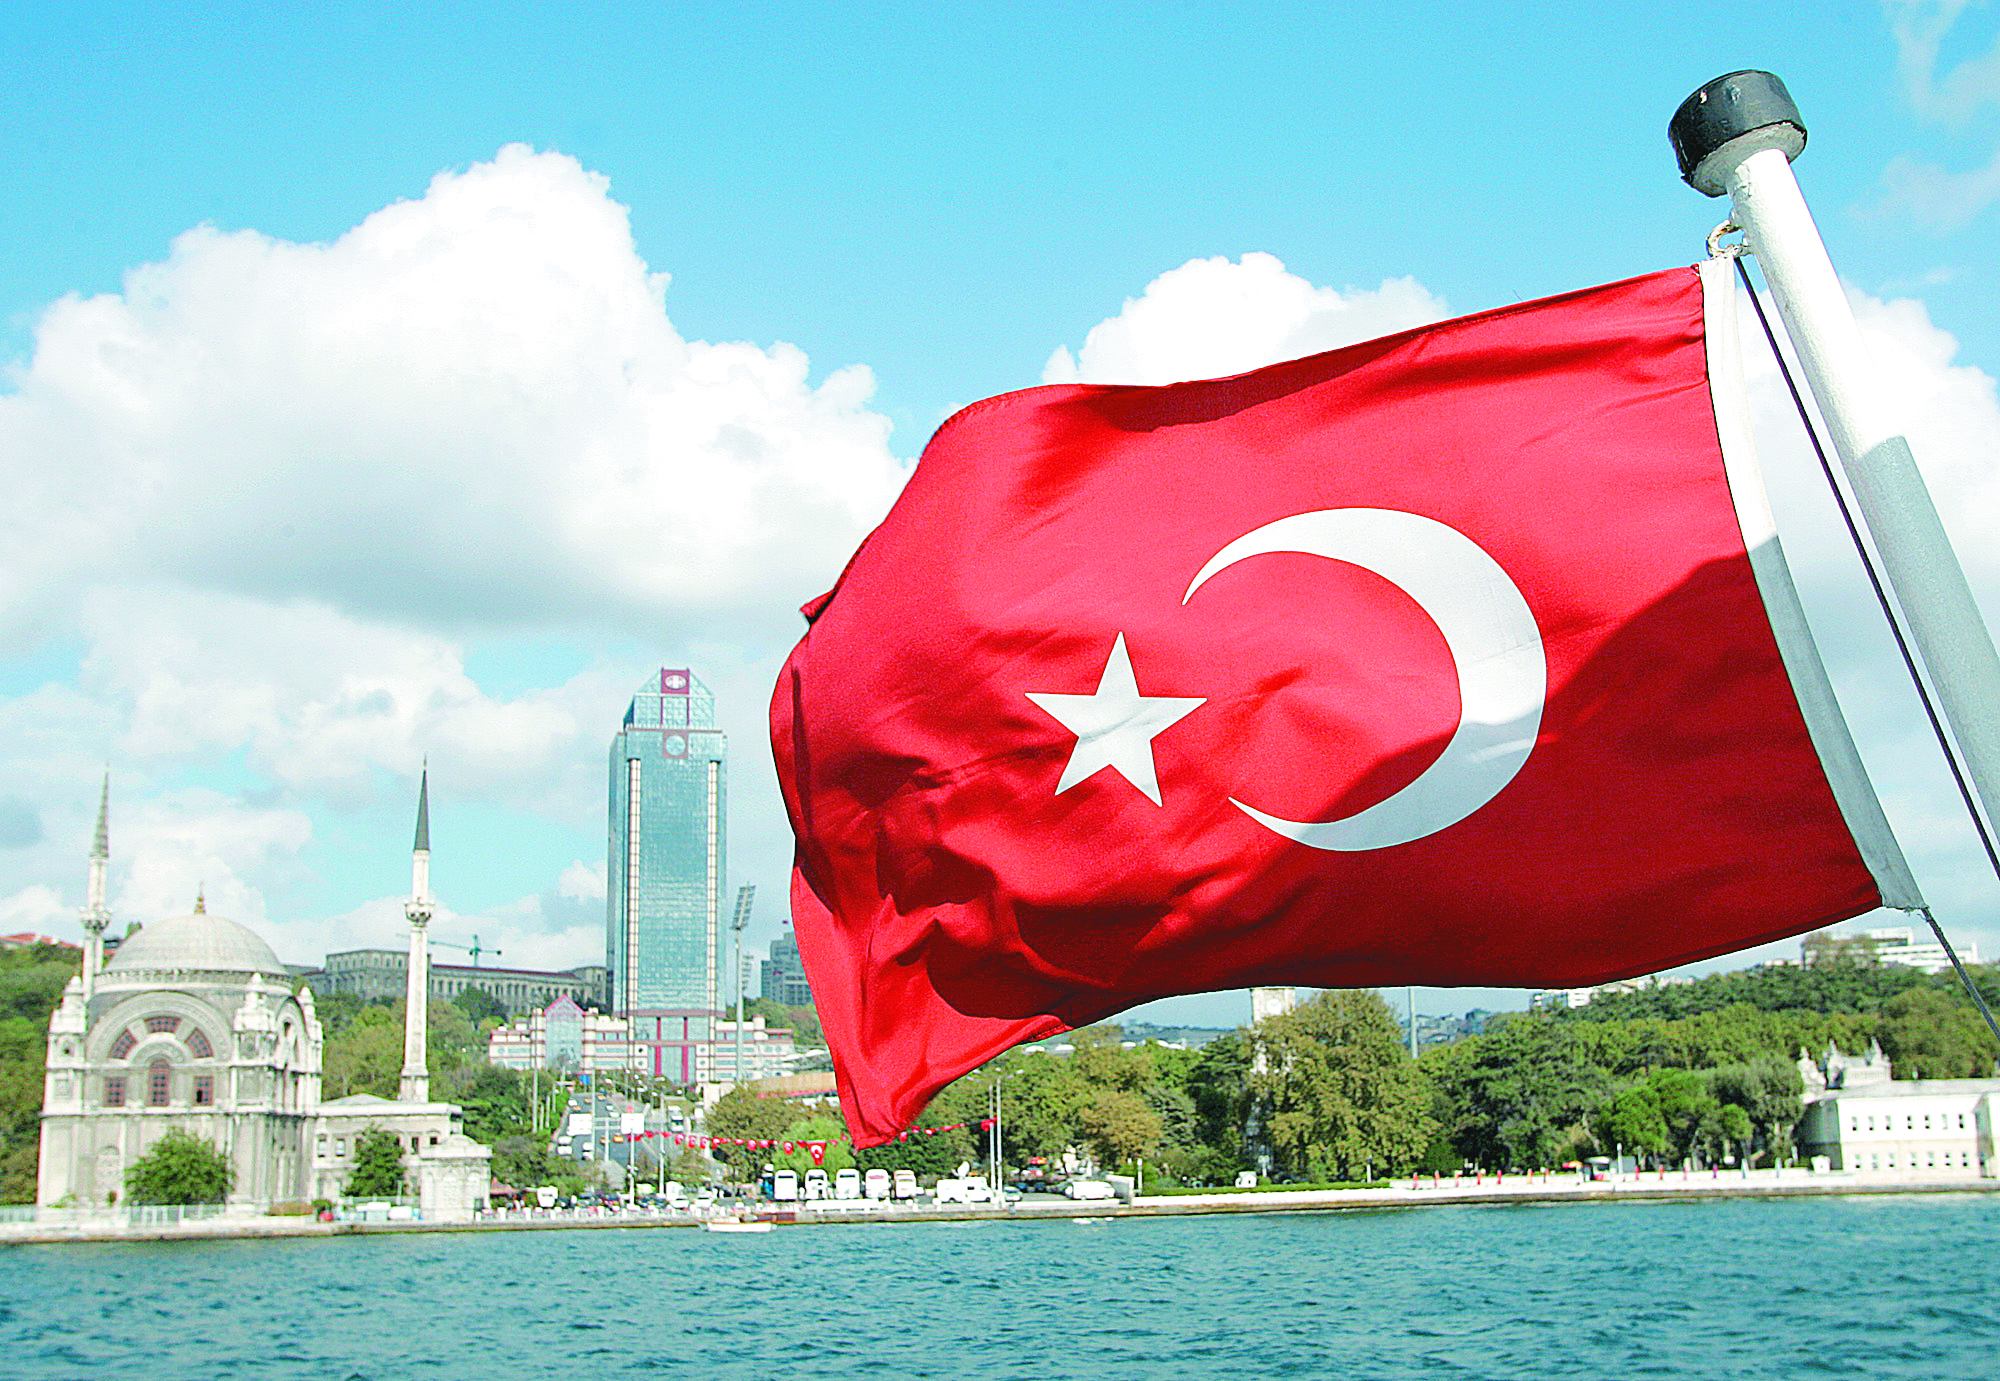 Όλο και περισσότεροι Τούρκοι ζητούν άσυλο στη χώρα μας